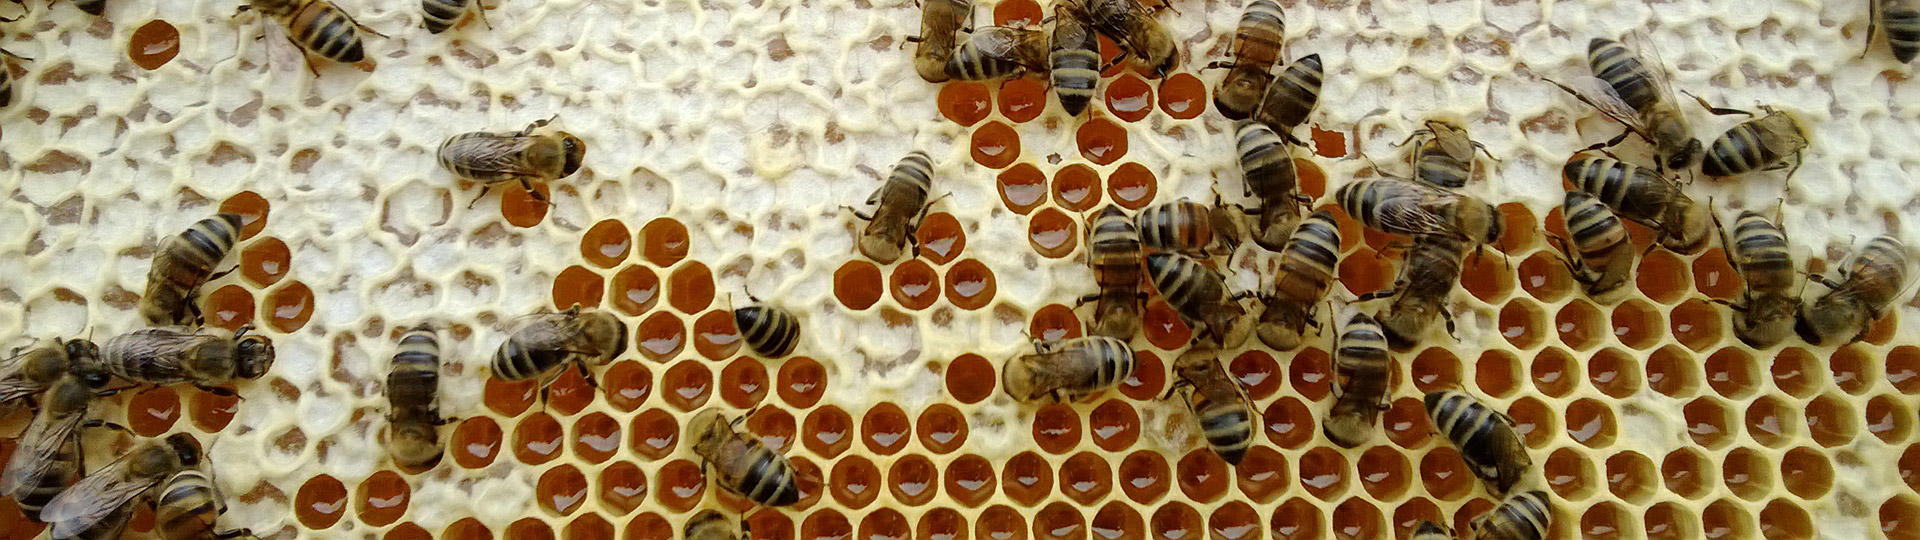 Honigbienen auf Honigwabe